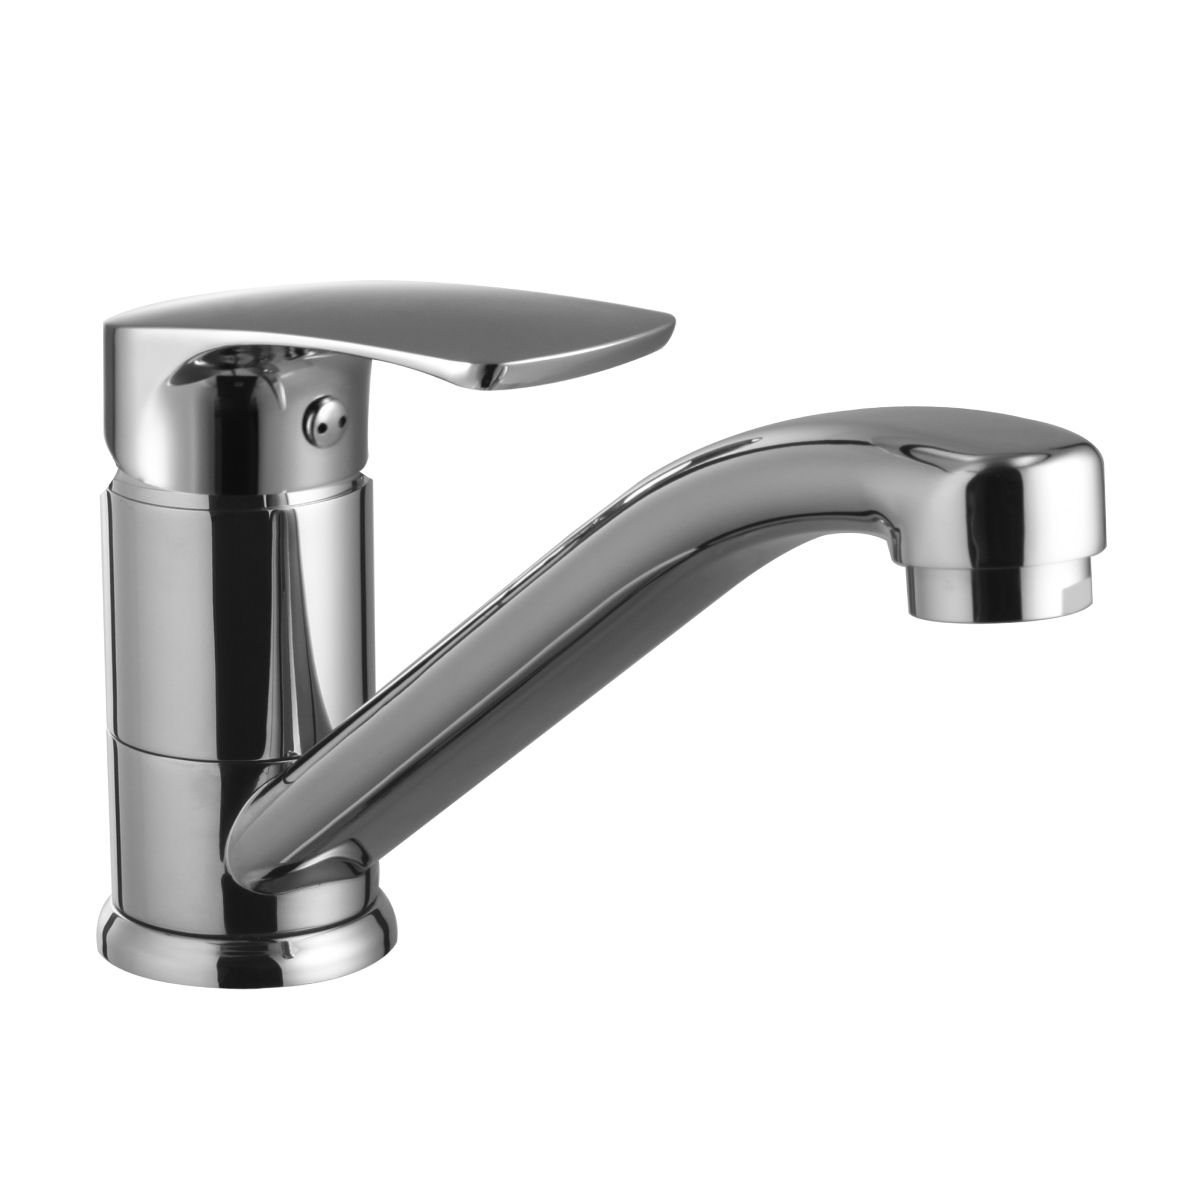 LM1704C Kitchen faucet
with swivel spout